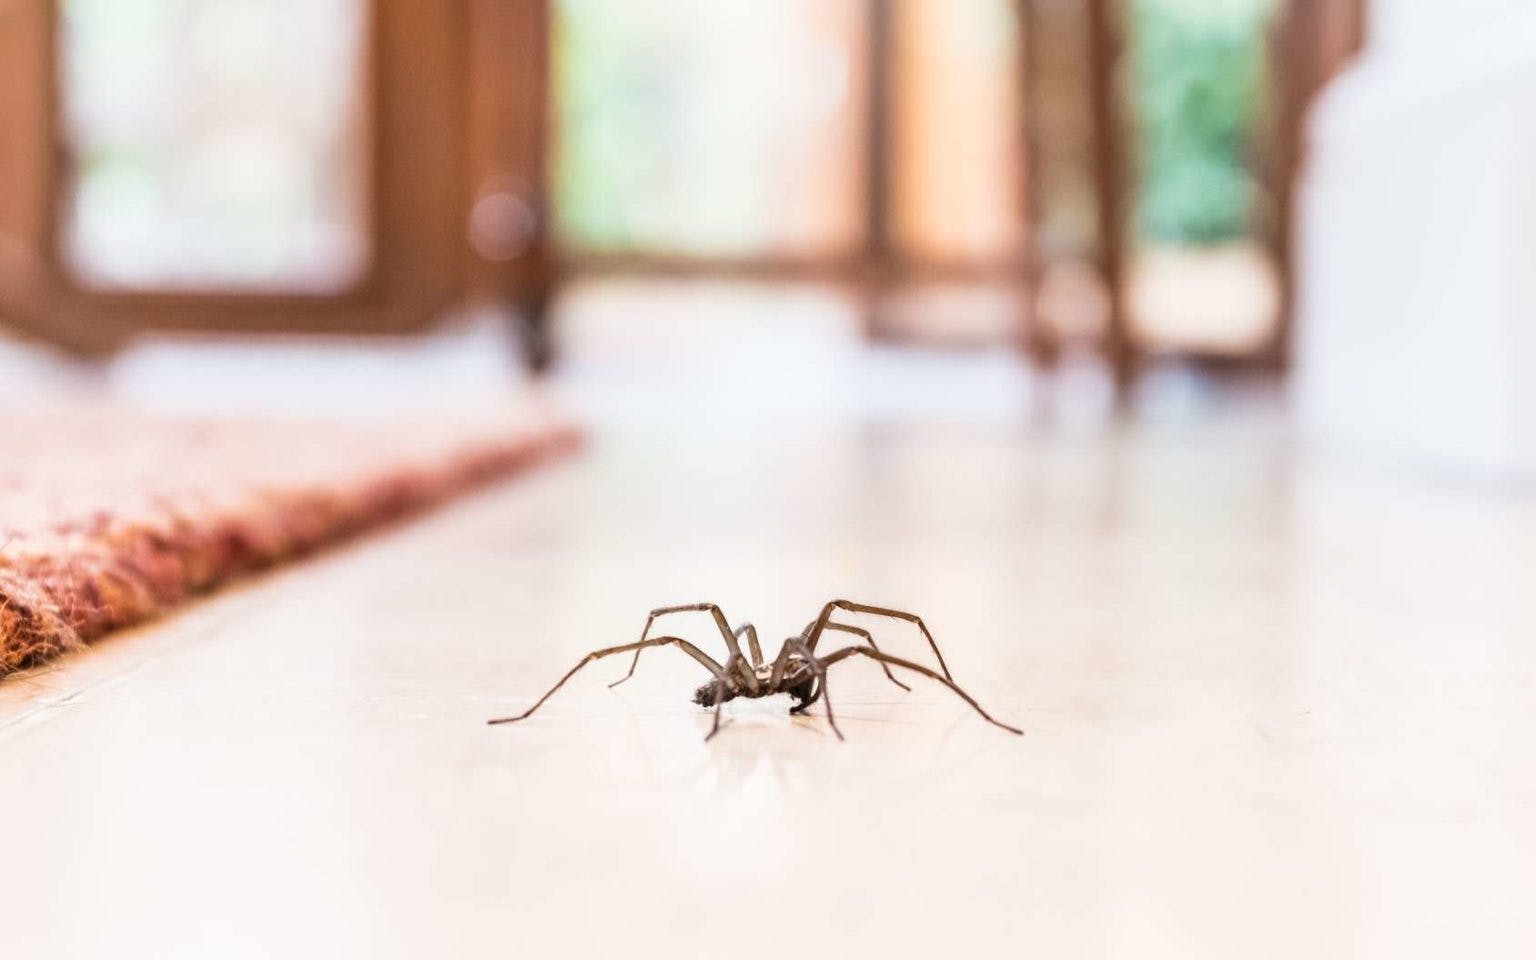 Spray anti-araignée Longue durée Efficace Contrôle des araignées repousse  les insectes